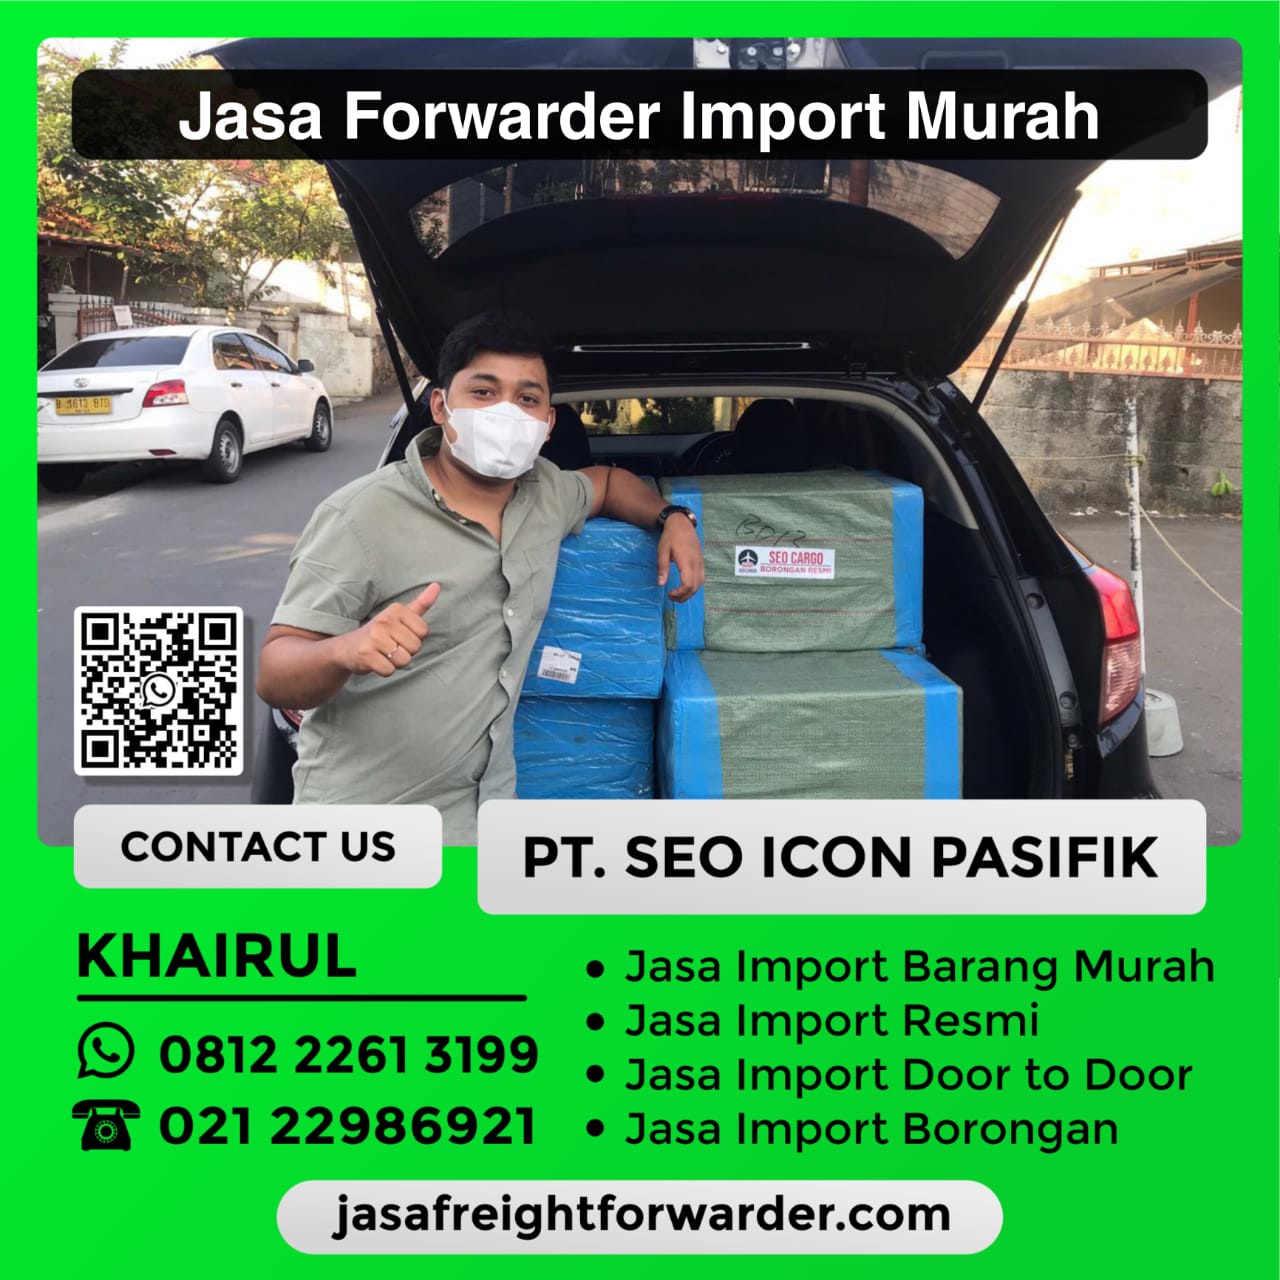 Jasa-Forwarder-Import-Murah.jpeg